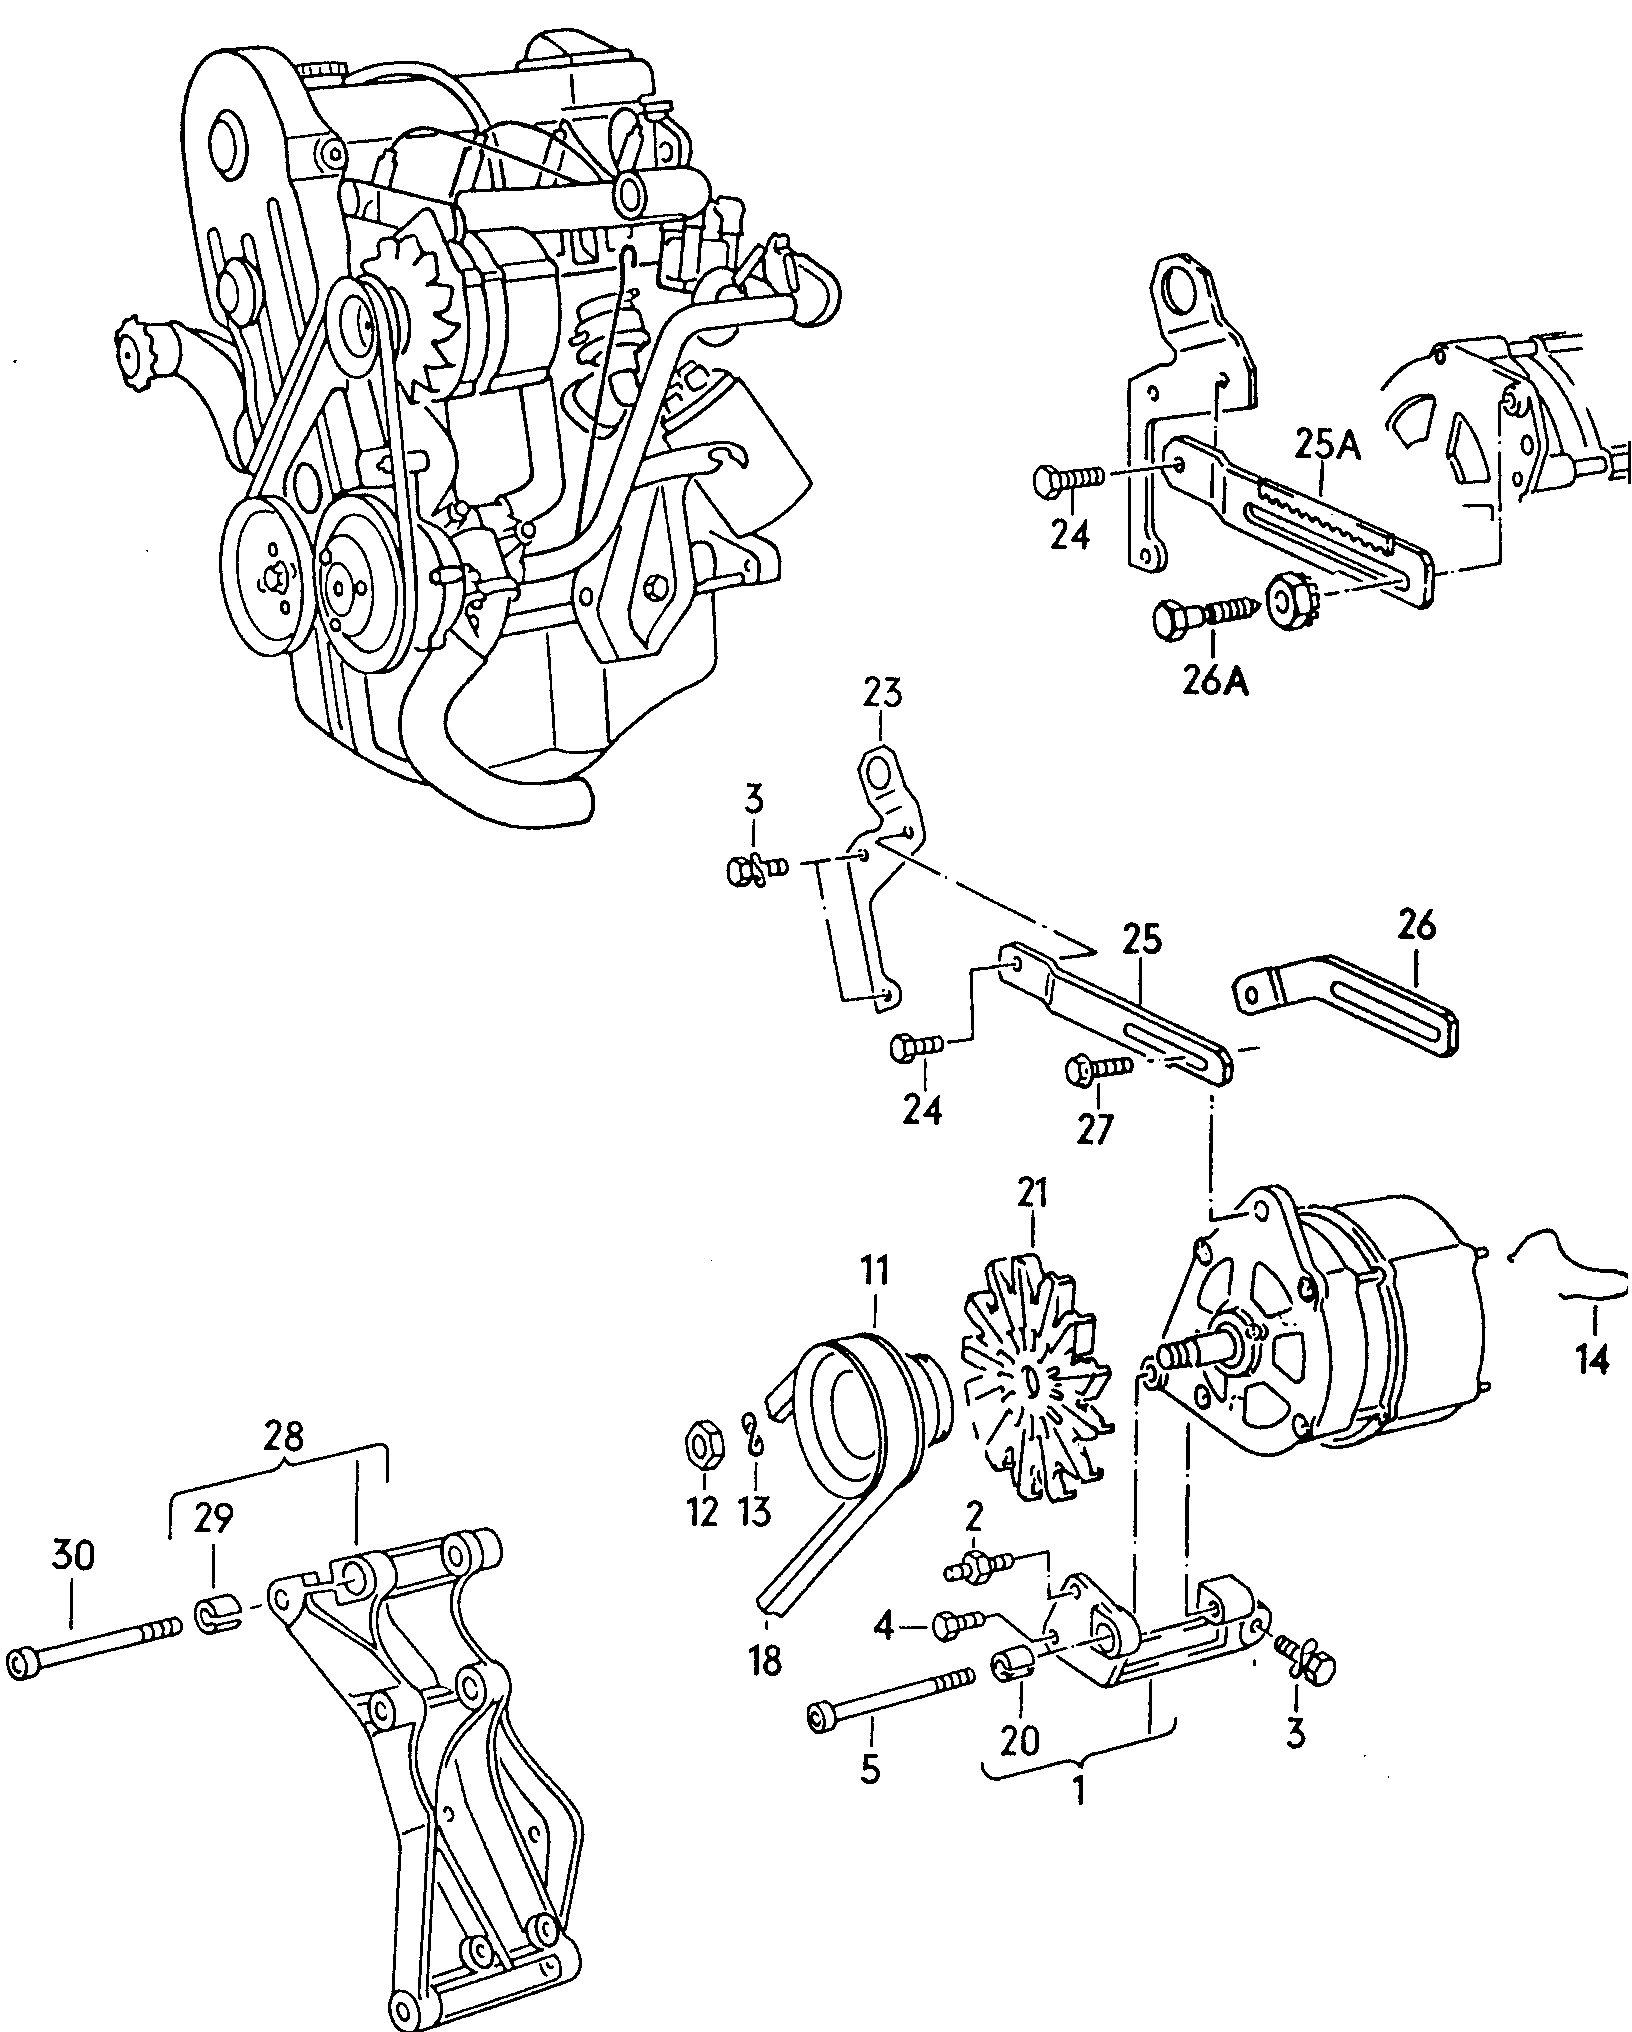 piezas conexion y
fijacion p. alternador - Golf Cabriolet(GOC)  